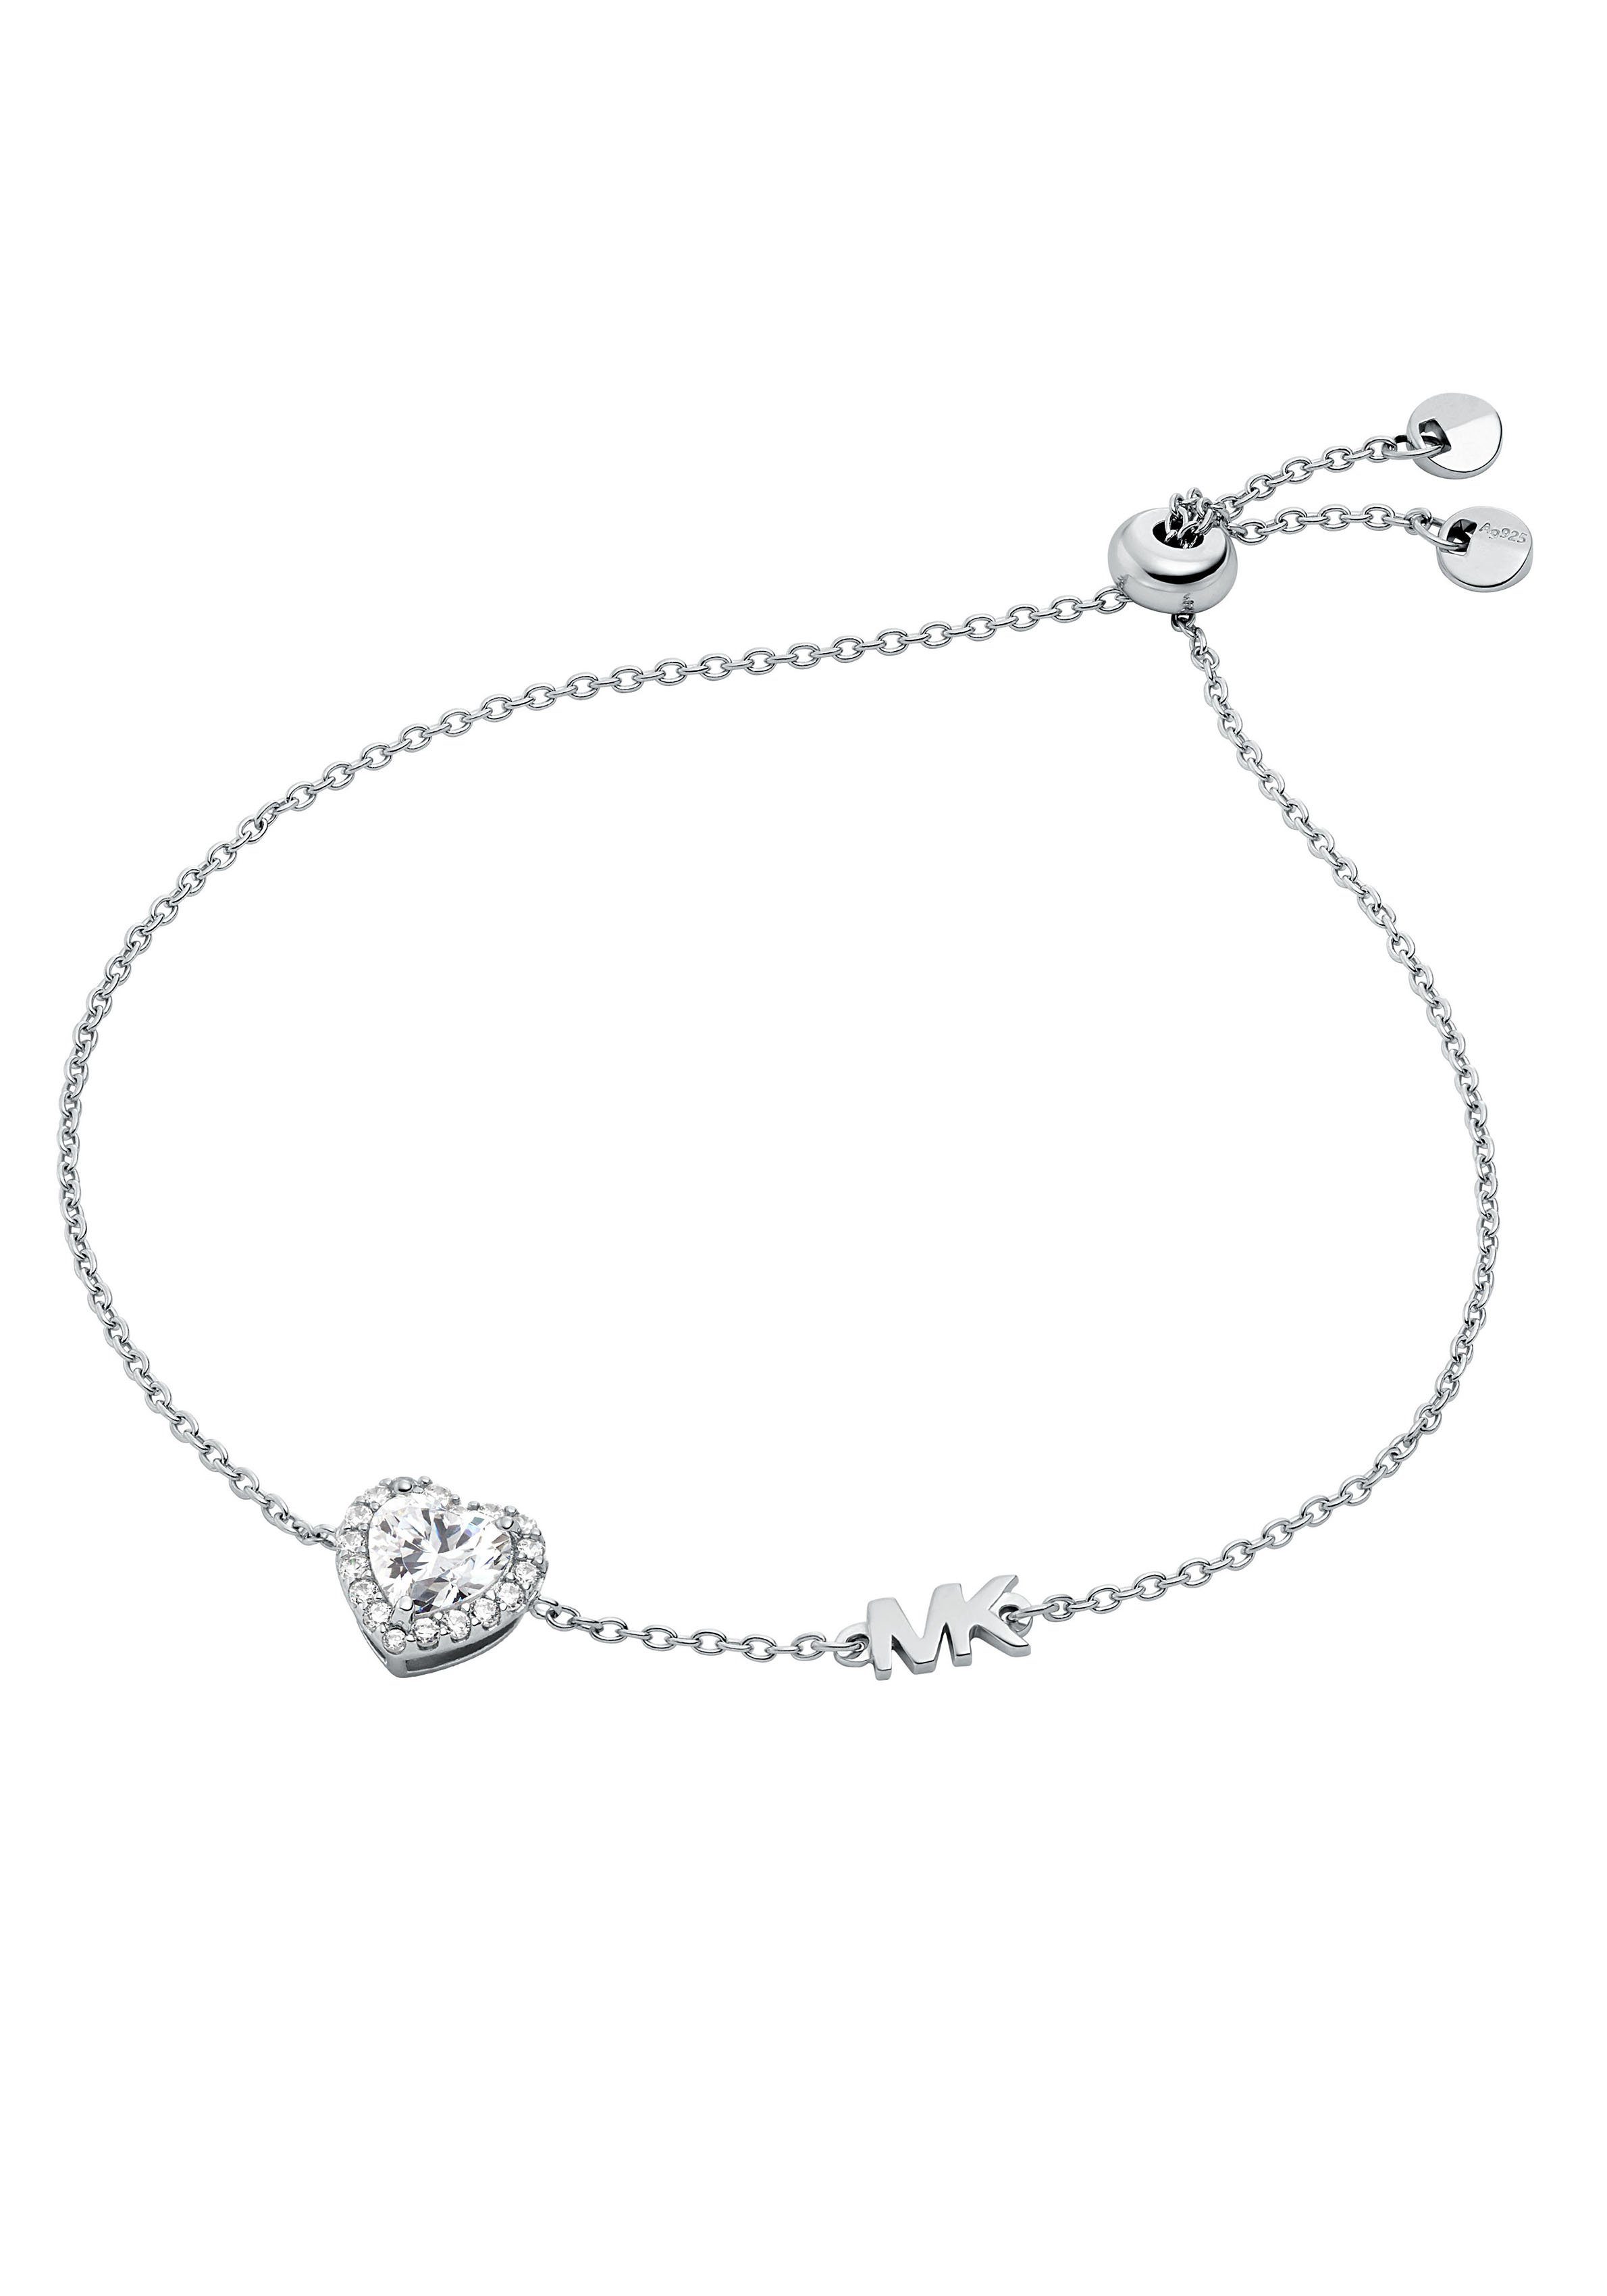 MICHAEL KORS Armband Herz, PREMIUM, MKC1518BG791, mit Glassteinen,  Damenaccessoire, süß und liebevoll zugleich